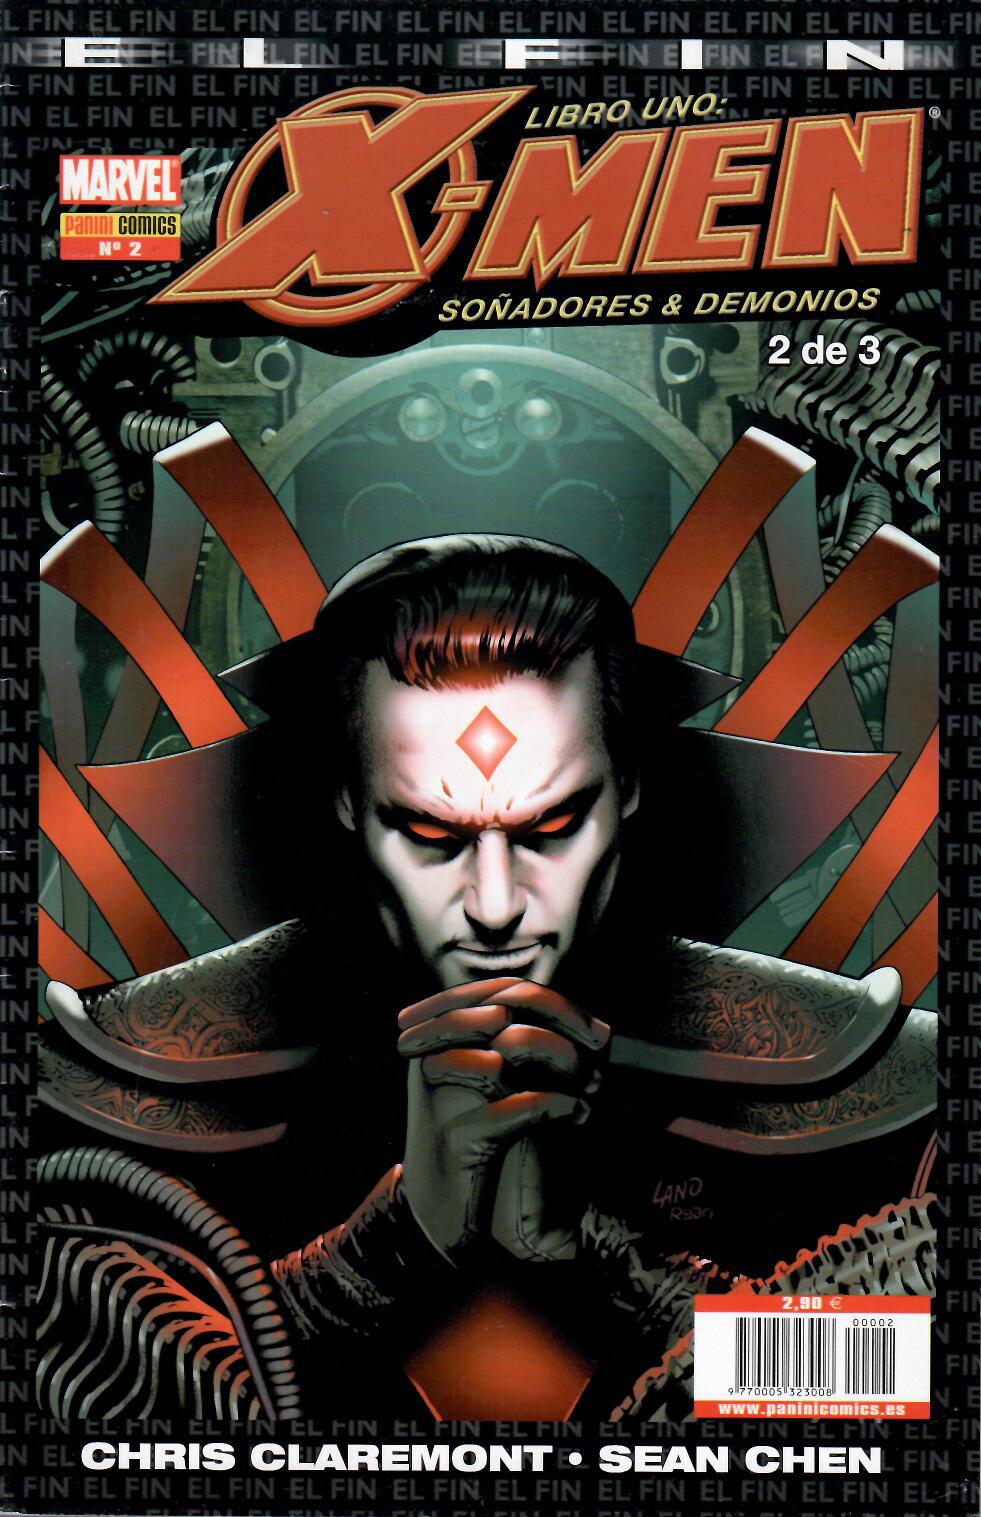 X-Men: El Fin. Libro uno: Soñadores & Demonios. Panini 2005. Nº 2